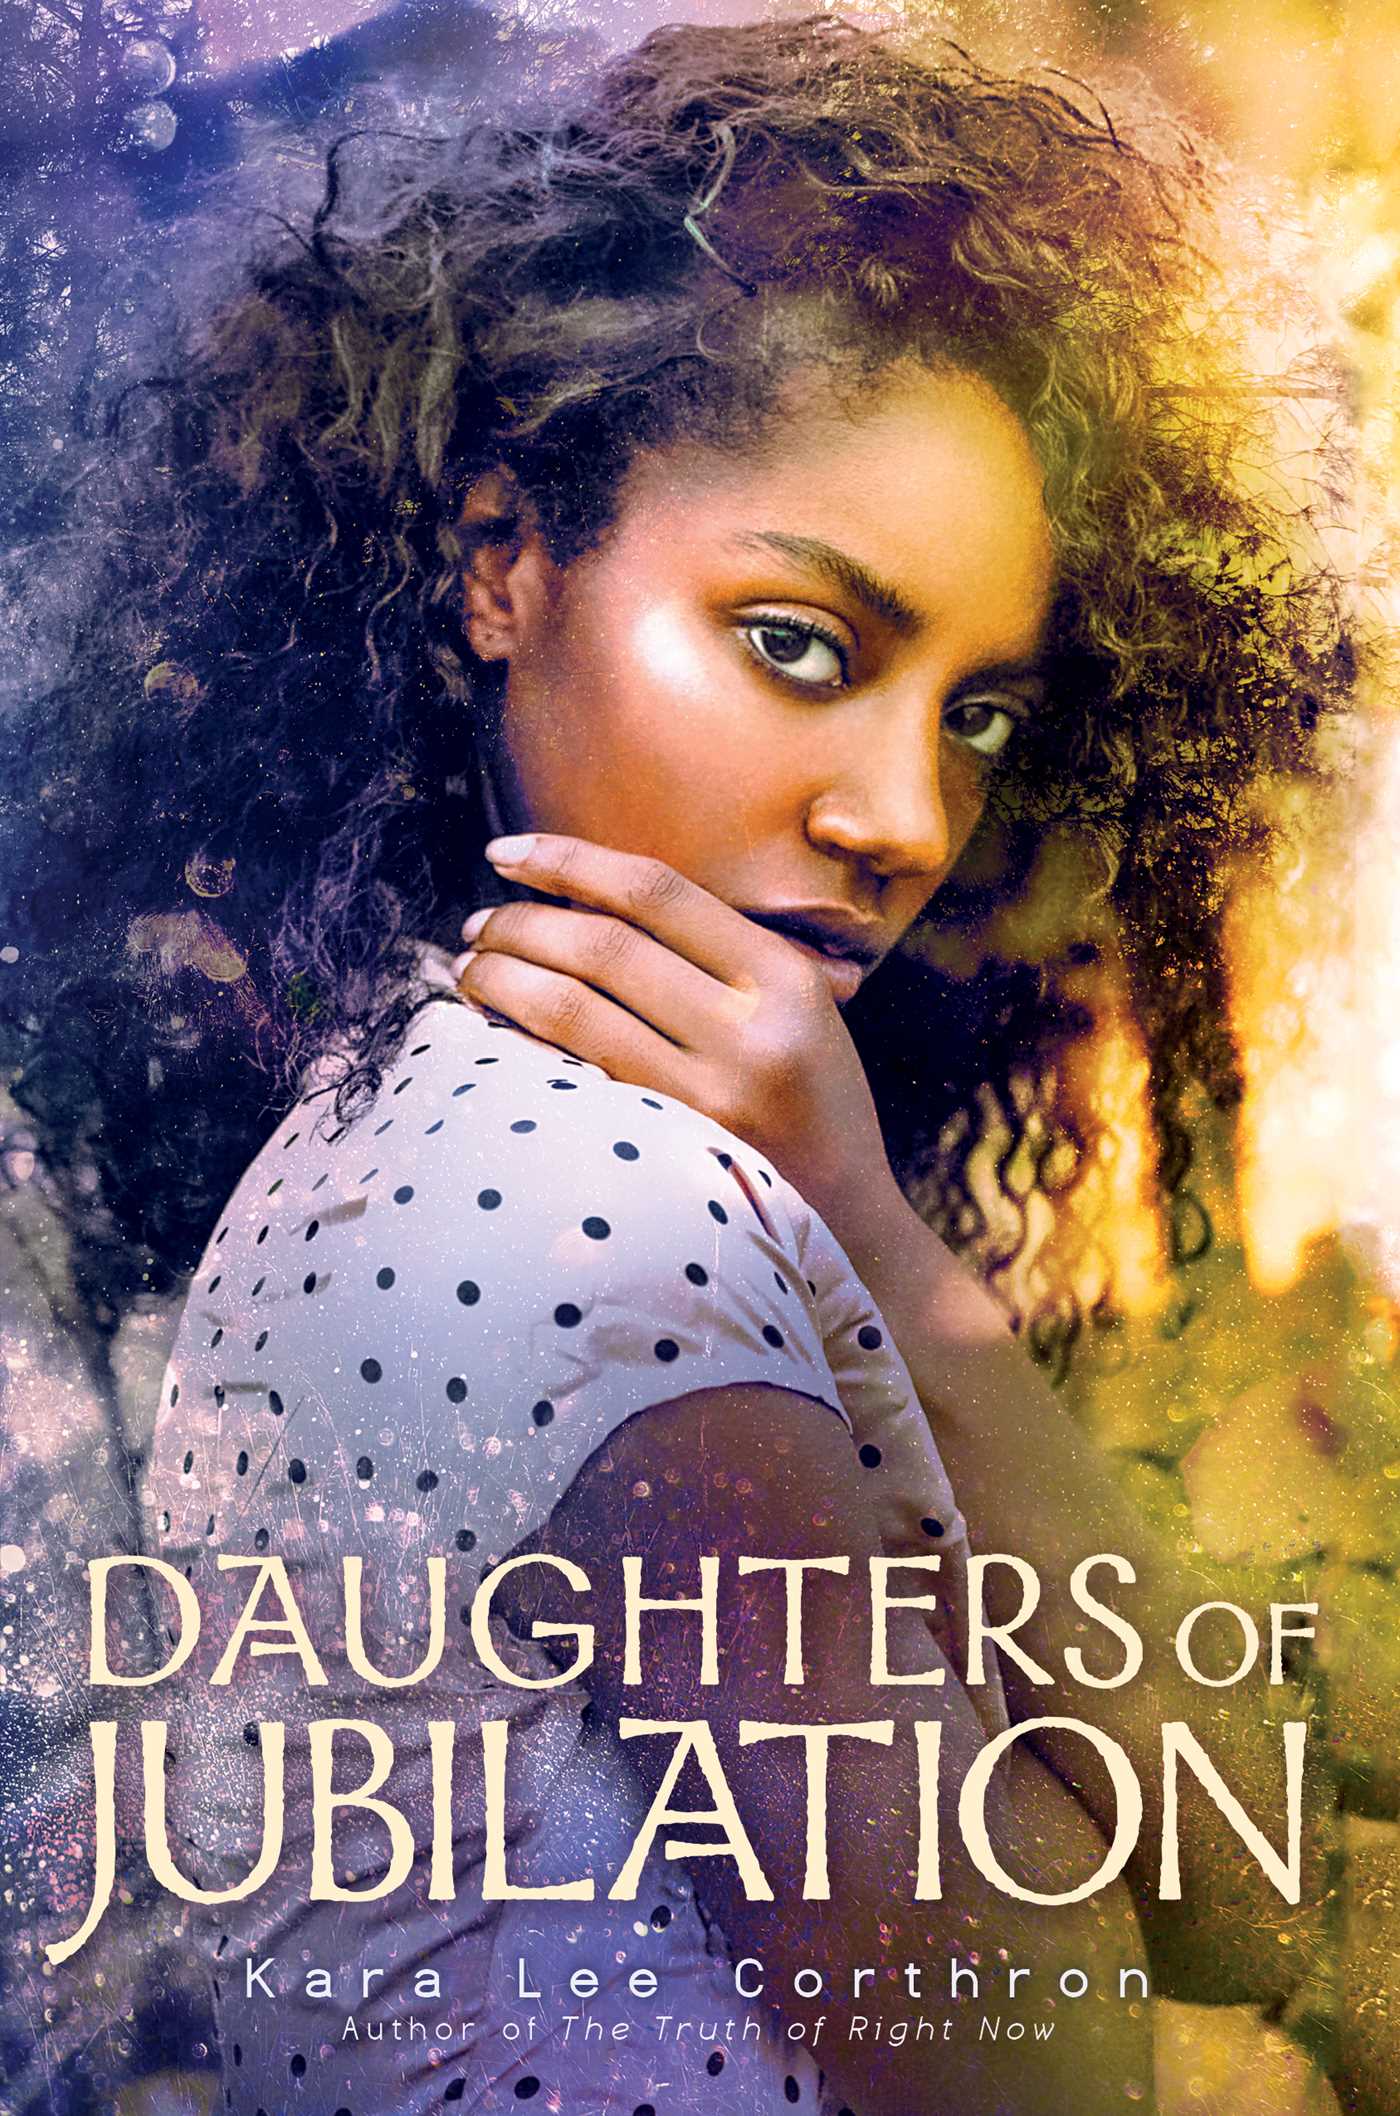 Daughters of Jubilation by Kara Lee Corthron